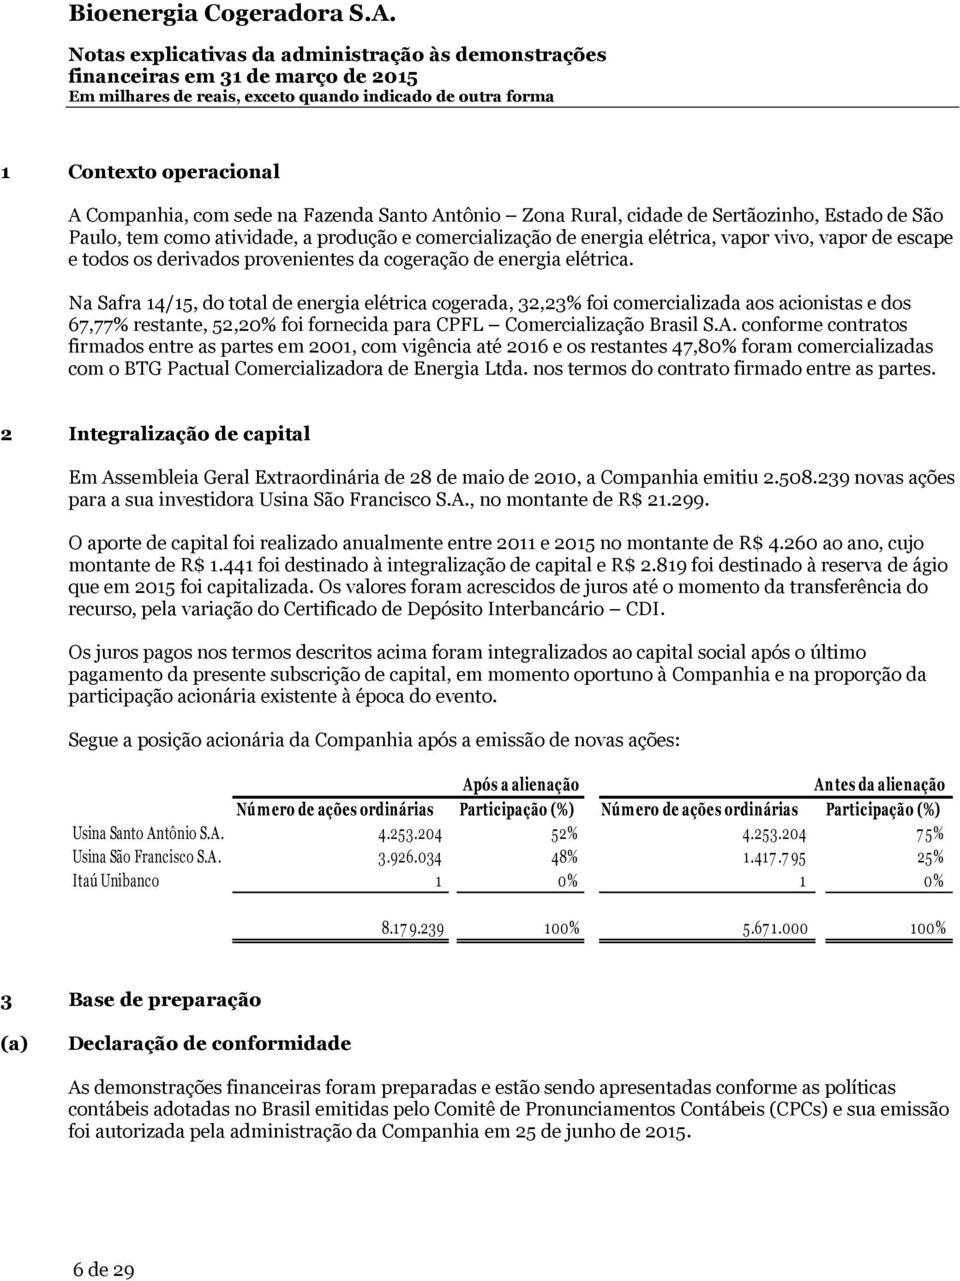 Na Safra 14/15, do total de energia elétrica cogerada, 32,23% foi comercializada aos acionistas e dos 67,77% restante, 52,20% foi fornecida para CPFL Comercialização Brasil S.A.